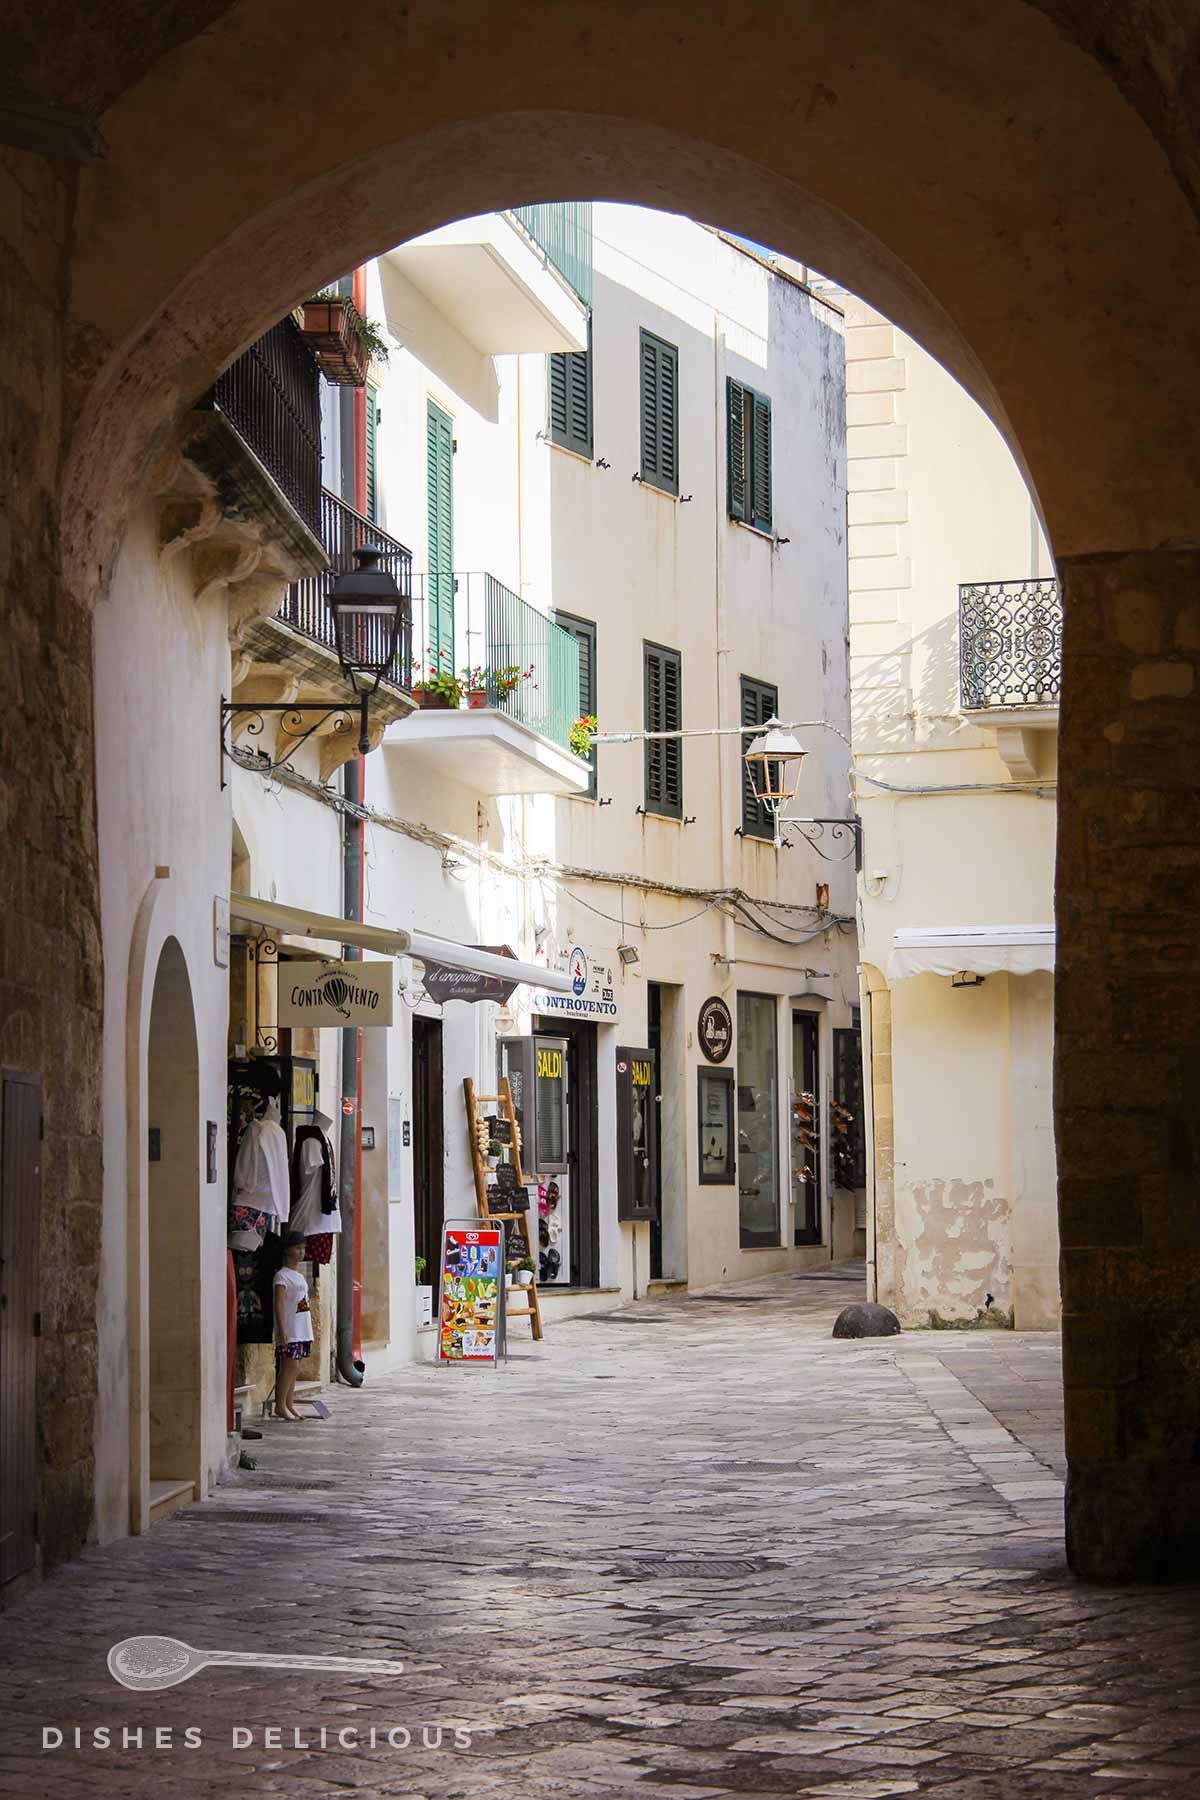 Tor am Eingang zur Altstadt von Otranto, Geschäfte laden zum Shoppen ein.